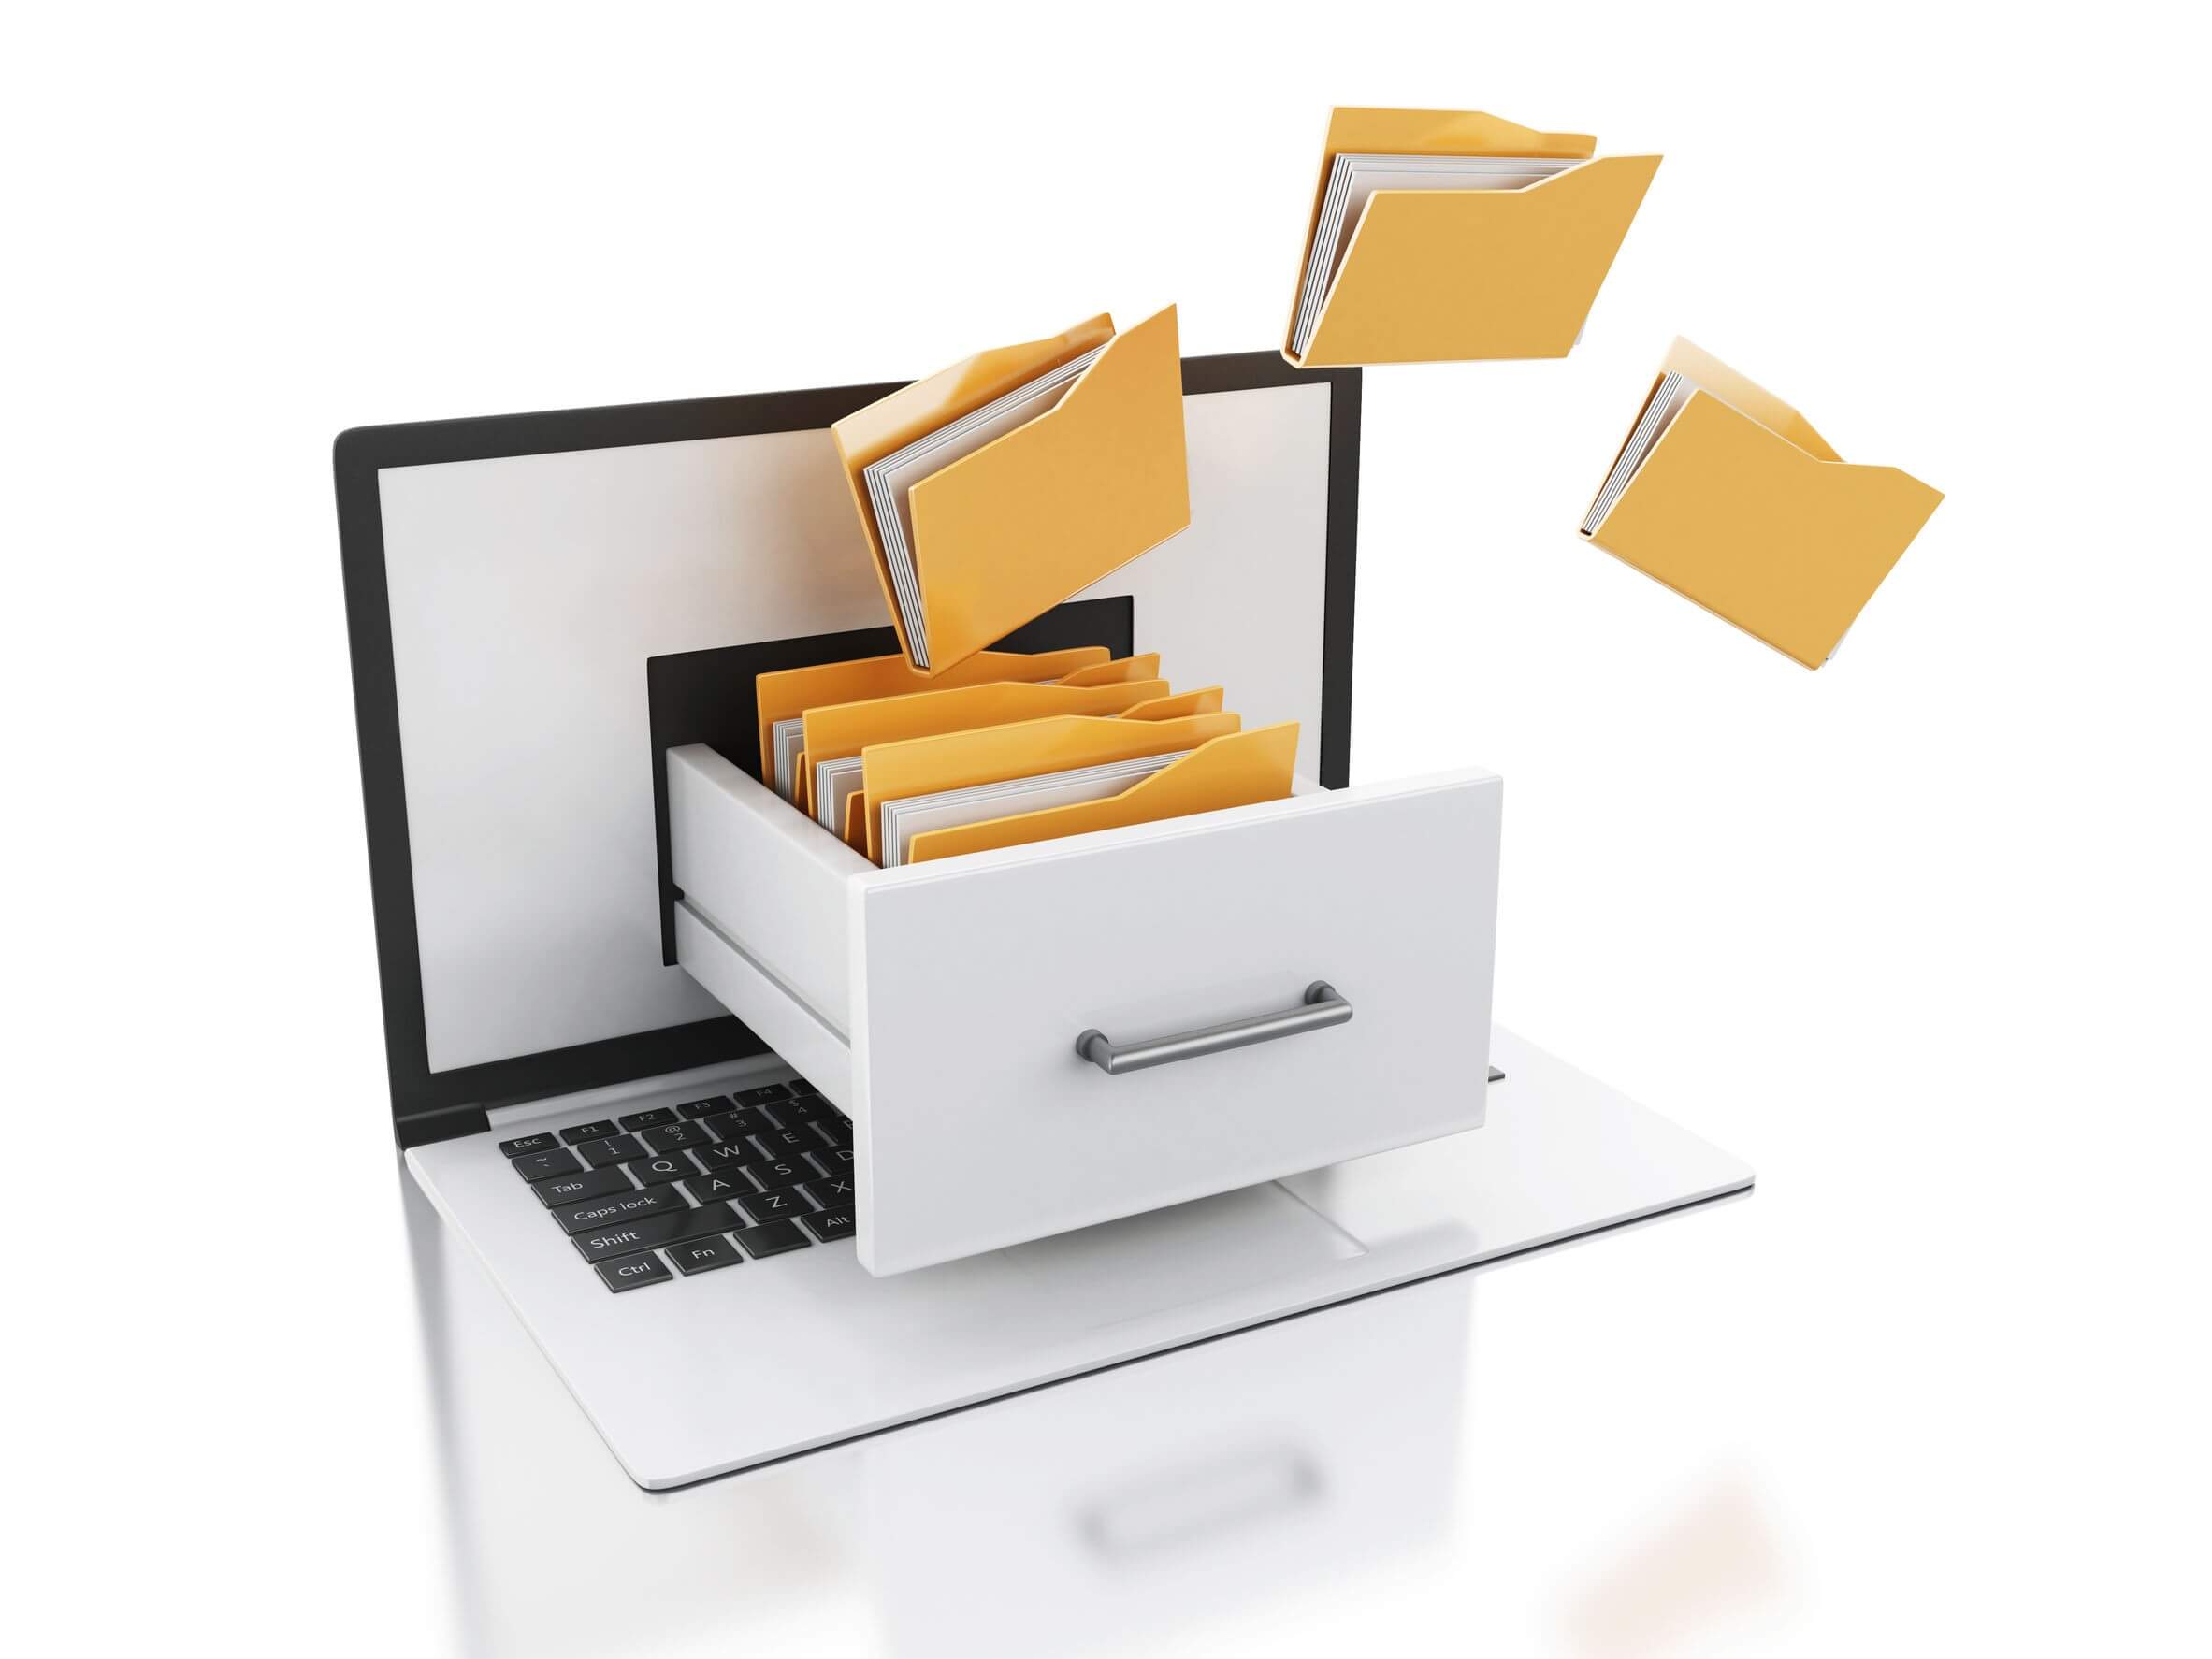 Come ordinare in casa i documenti: archiviazione e organizzazione